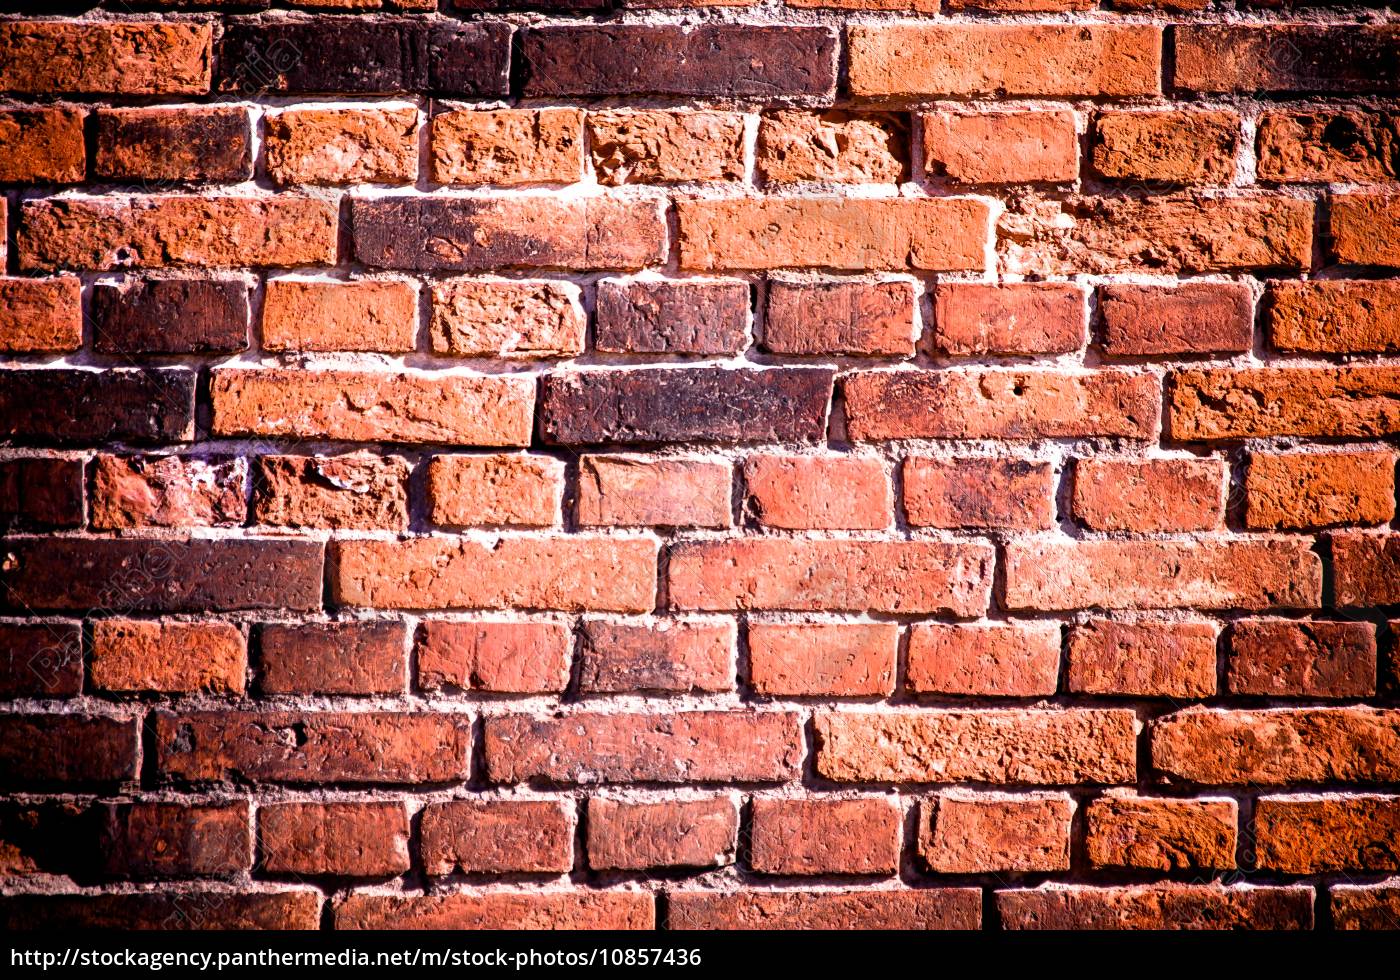 Brick Wall Texture - roblox brick wall texture